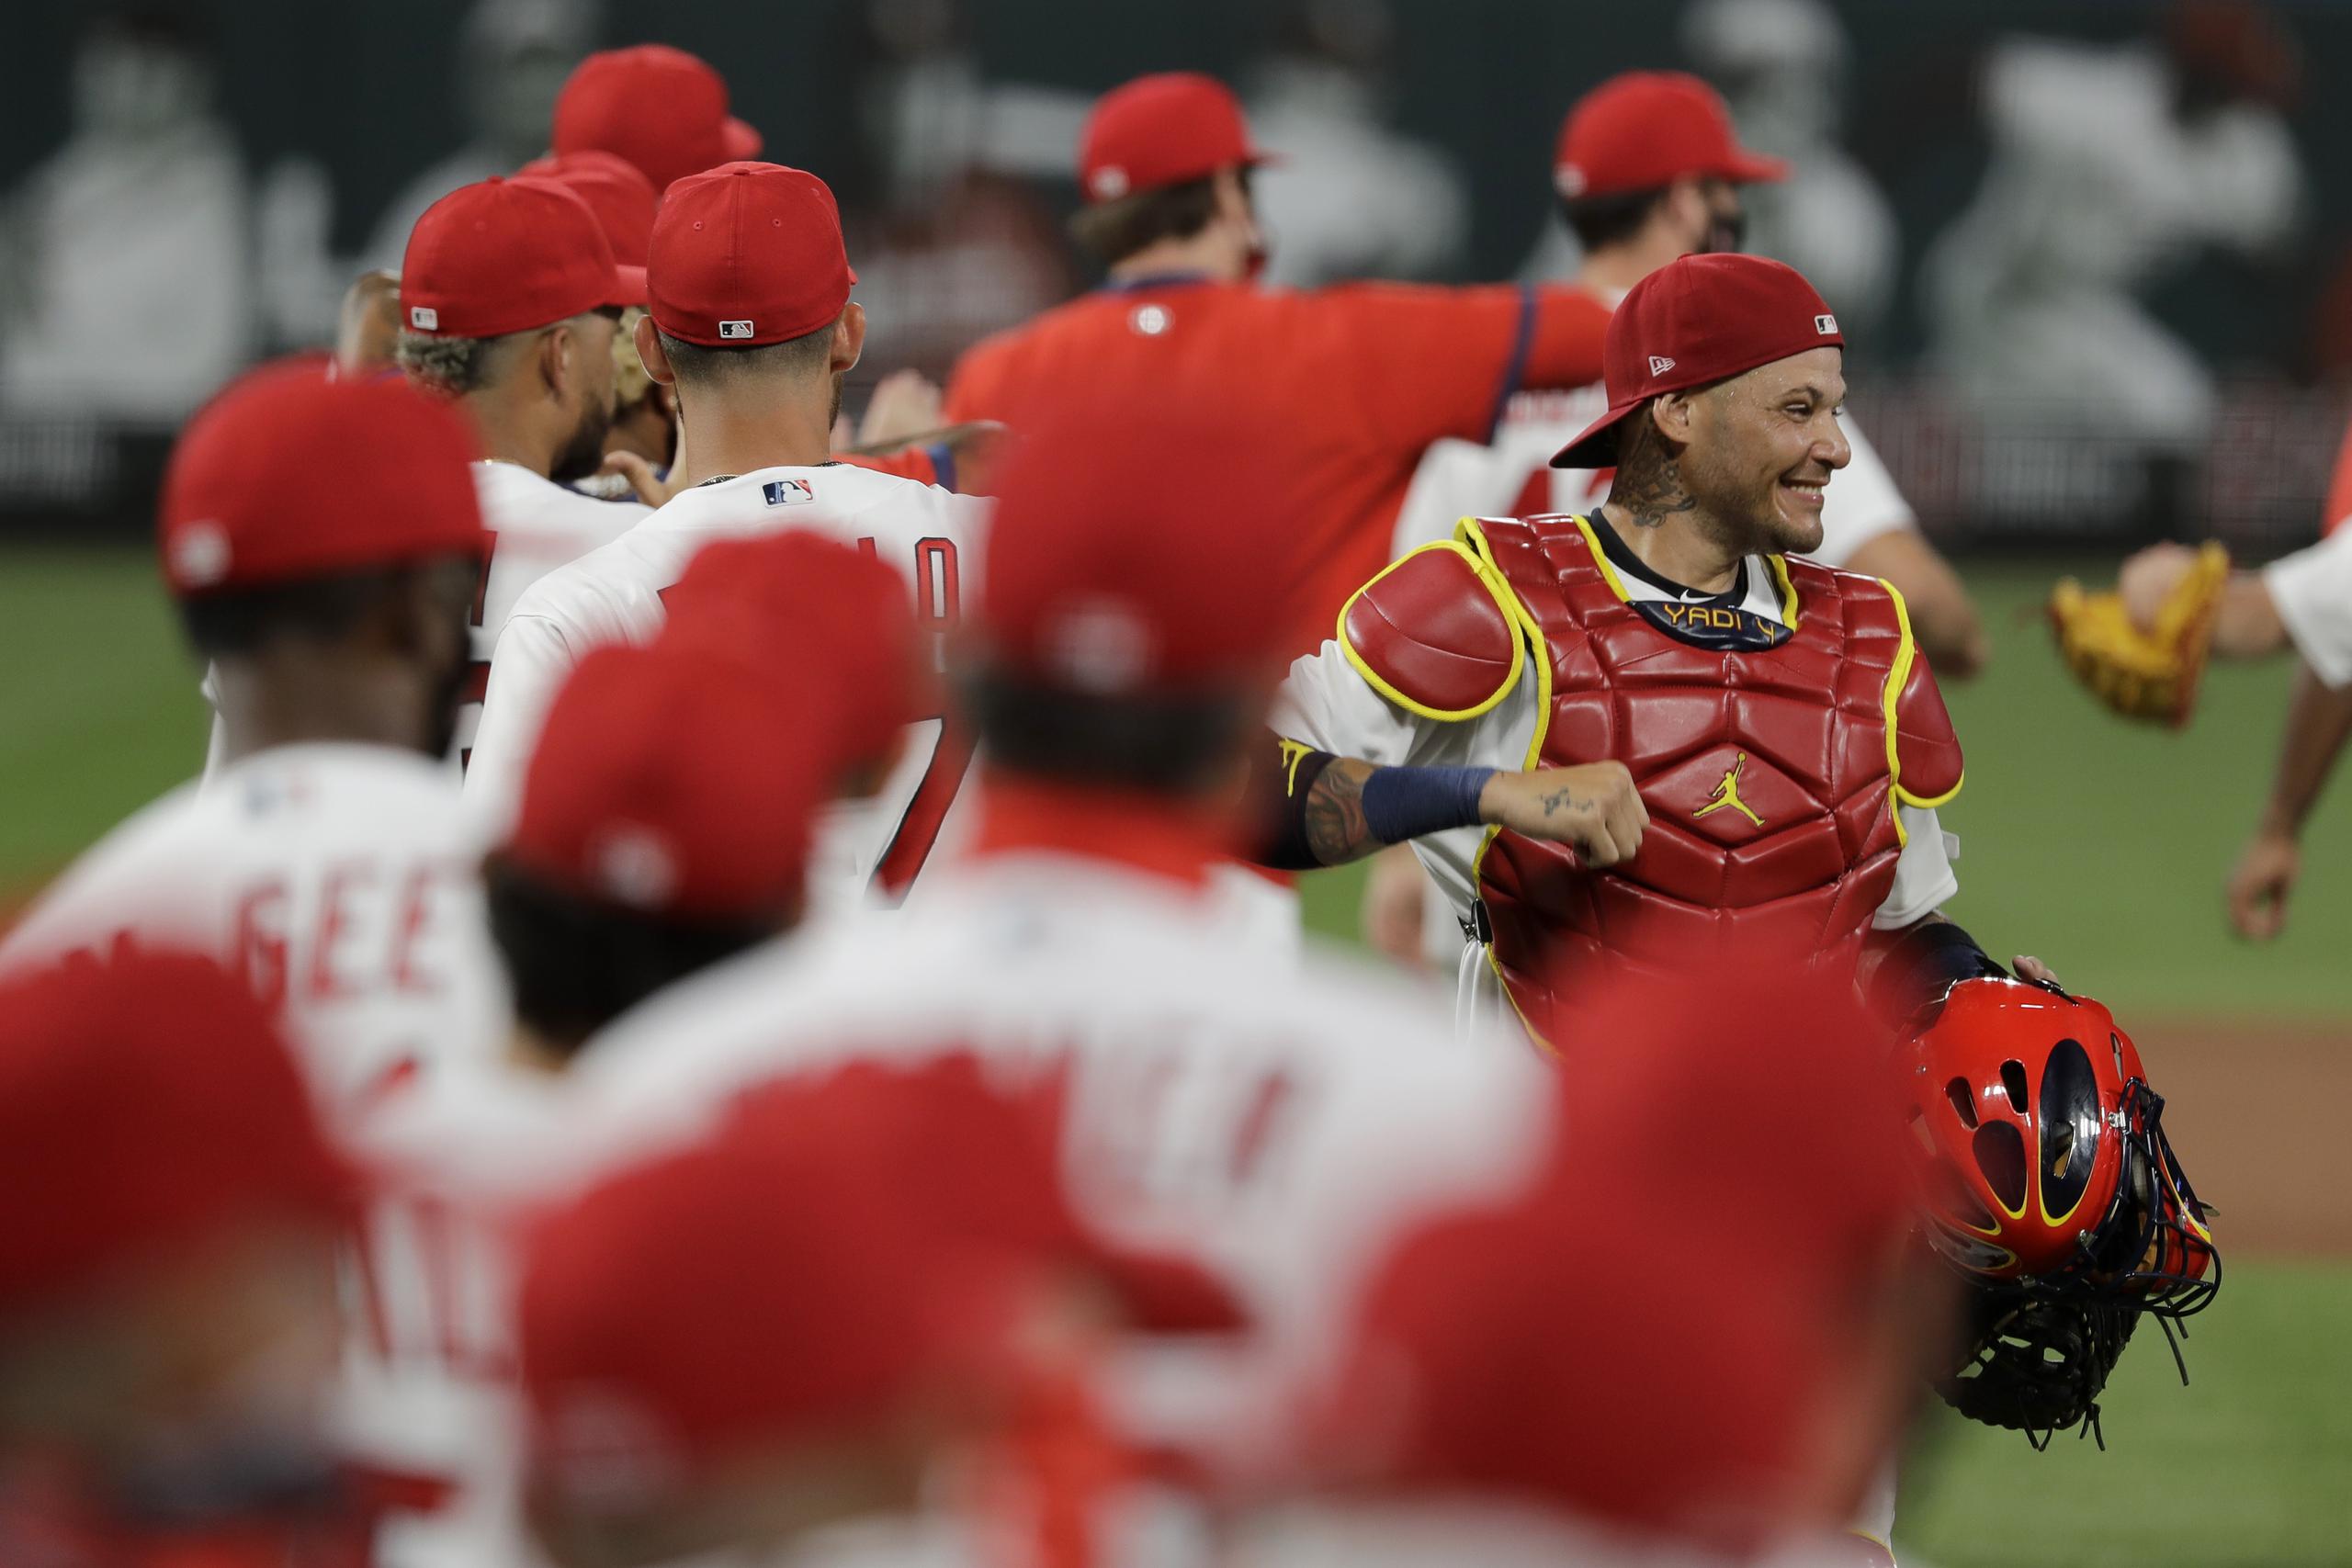 La situación de los Cardinals de San Luis se complica a medida que surgen nuevos contagios entre los peloteros y otro personal del equipo.